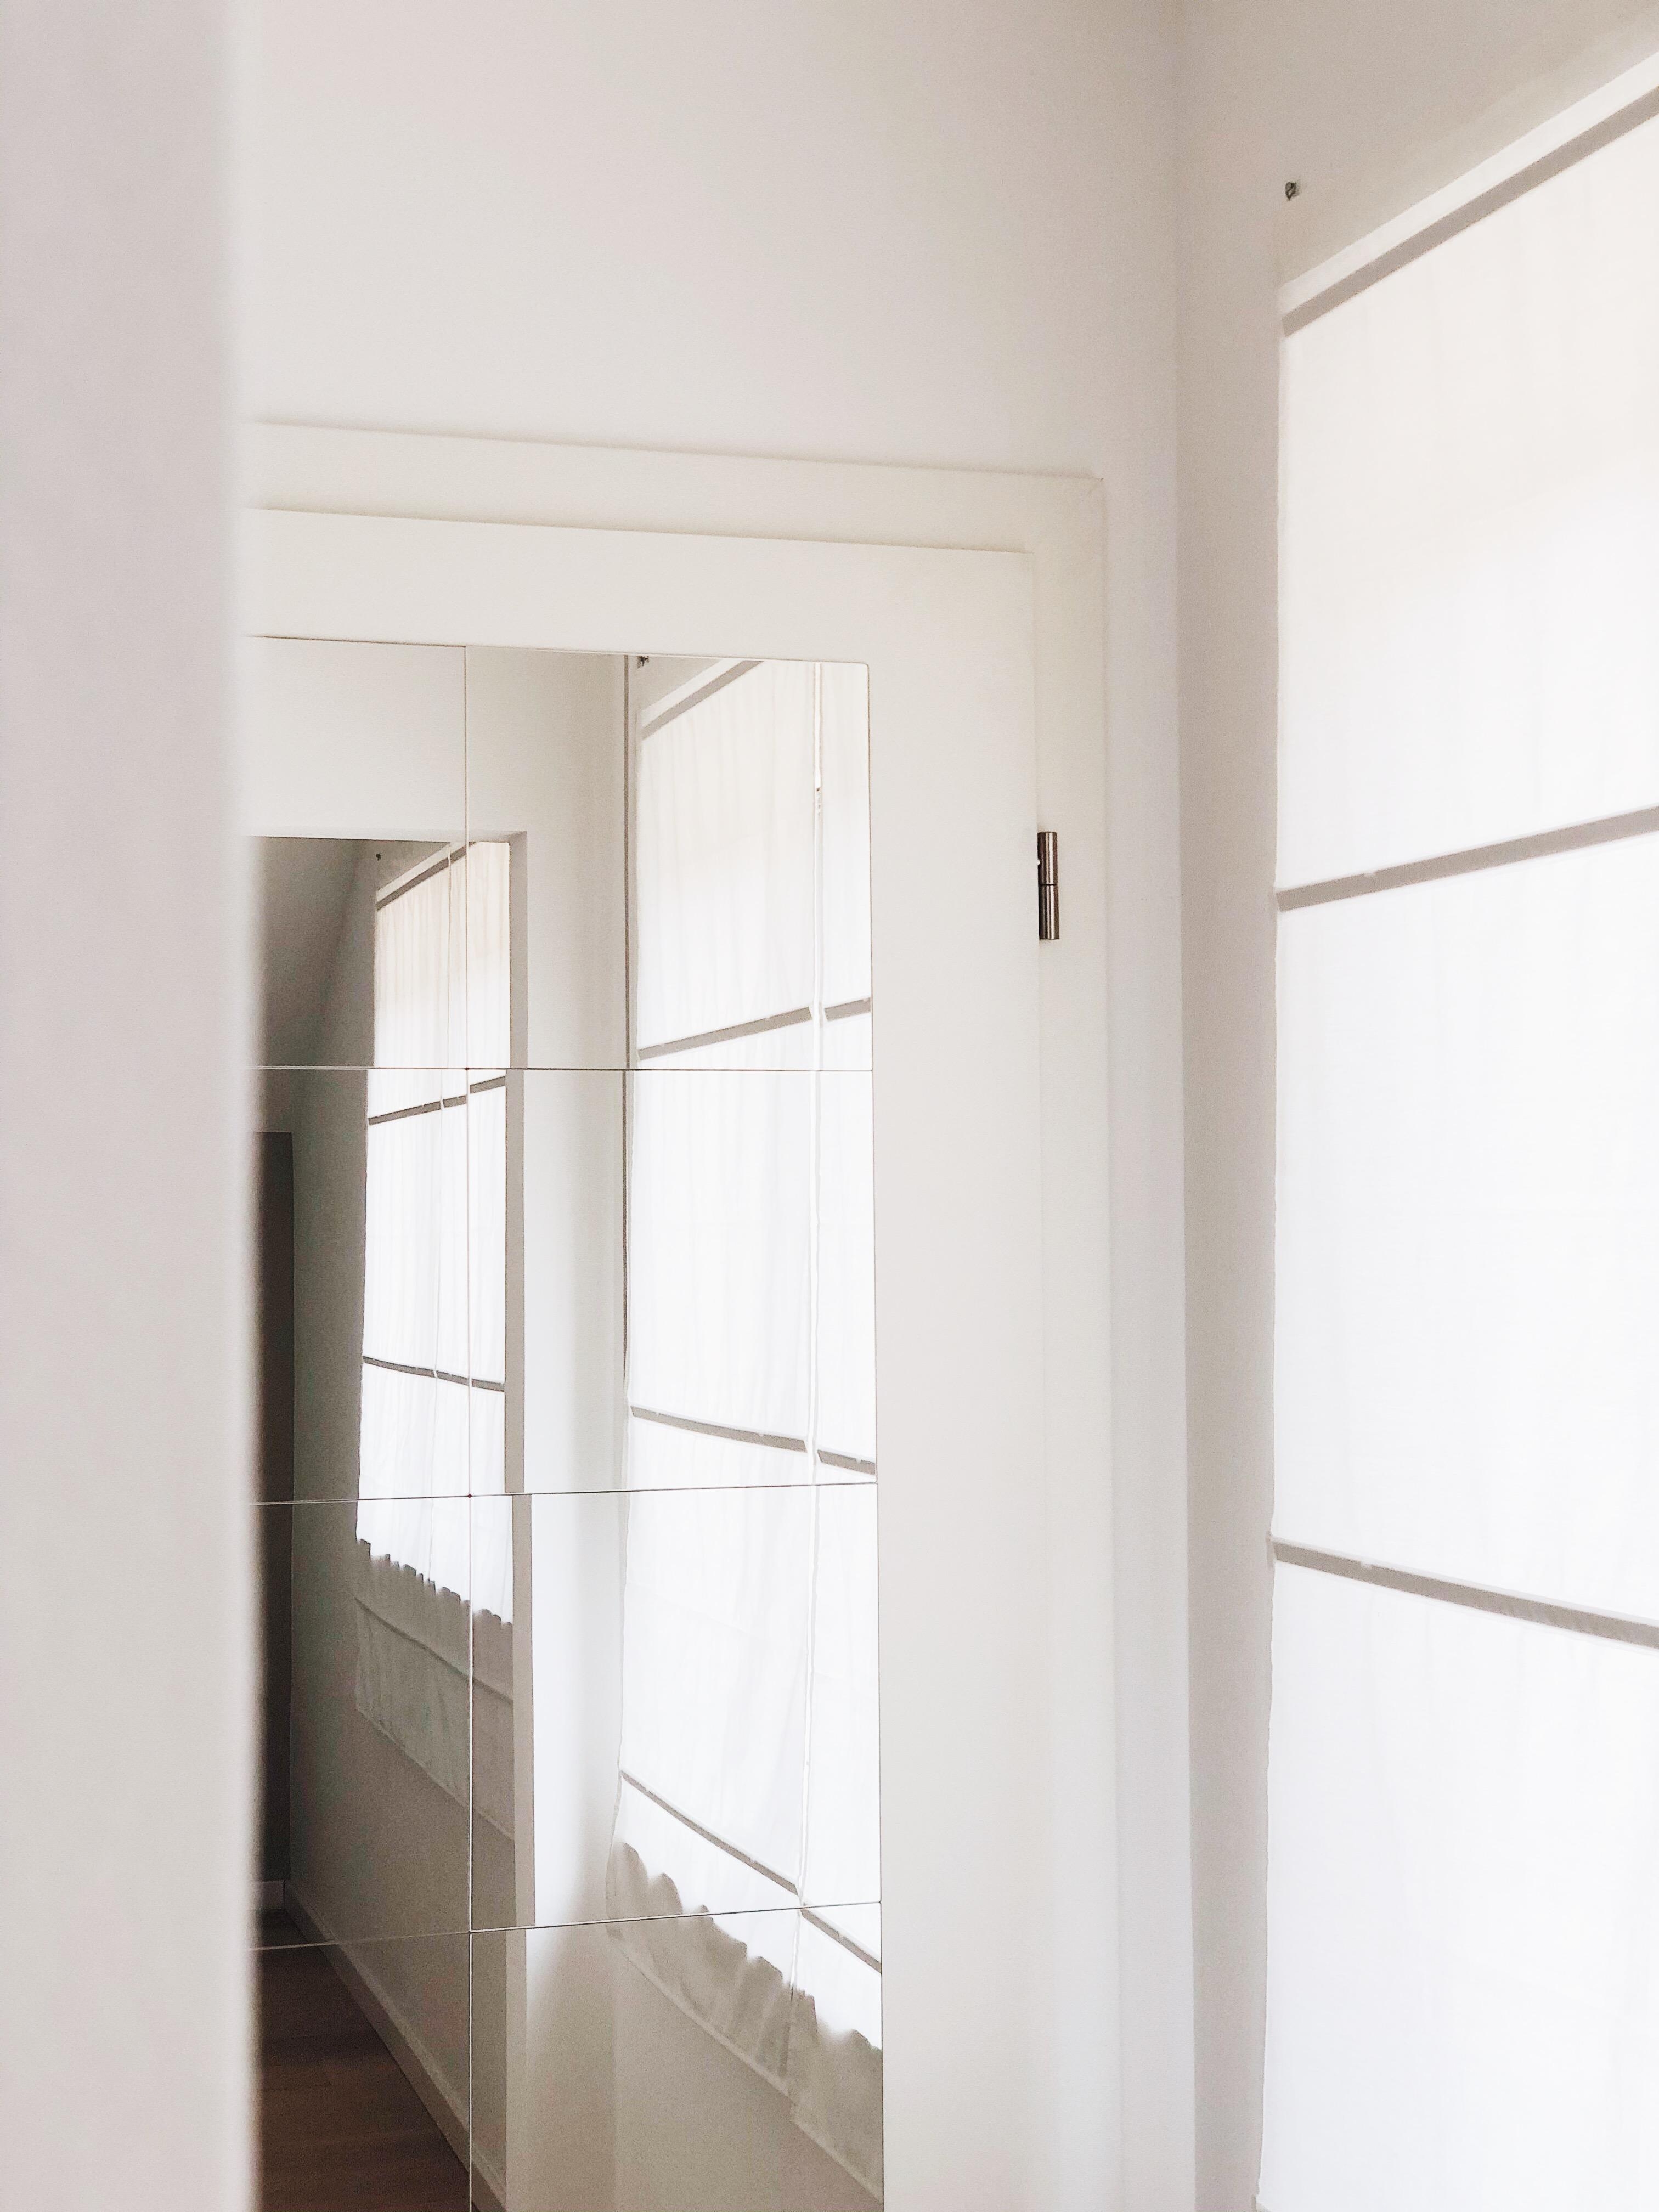 Beginnen wir mal mit unserer Ankleide. Hier seht ihr unseren Türspiegel aus Spiegelkacheln. #skandihome #allwhite